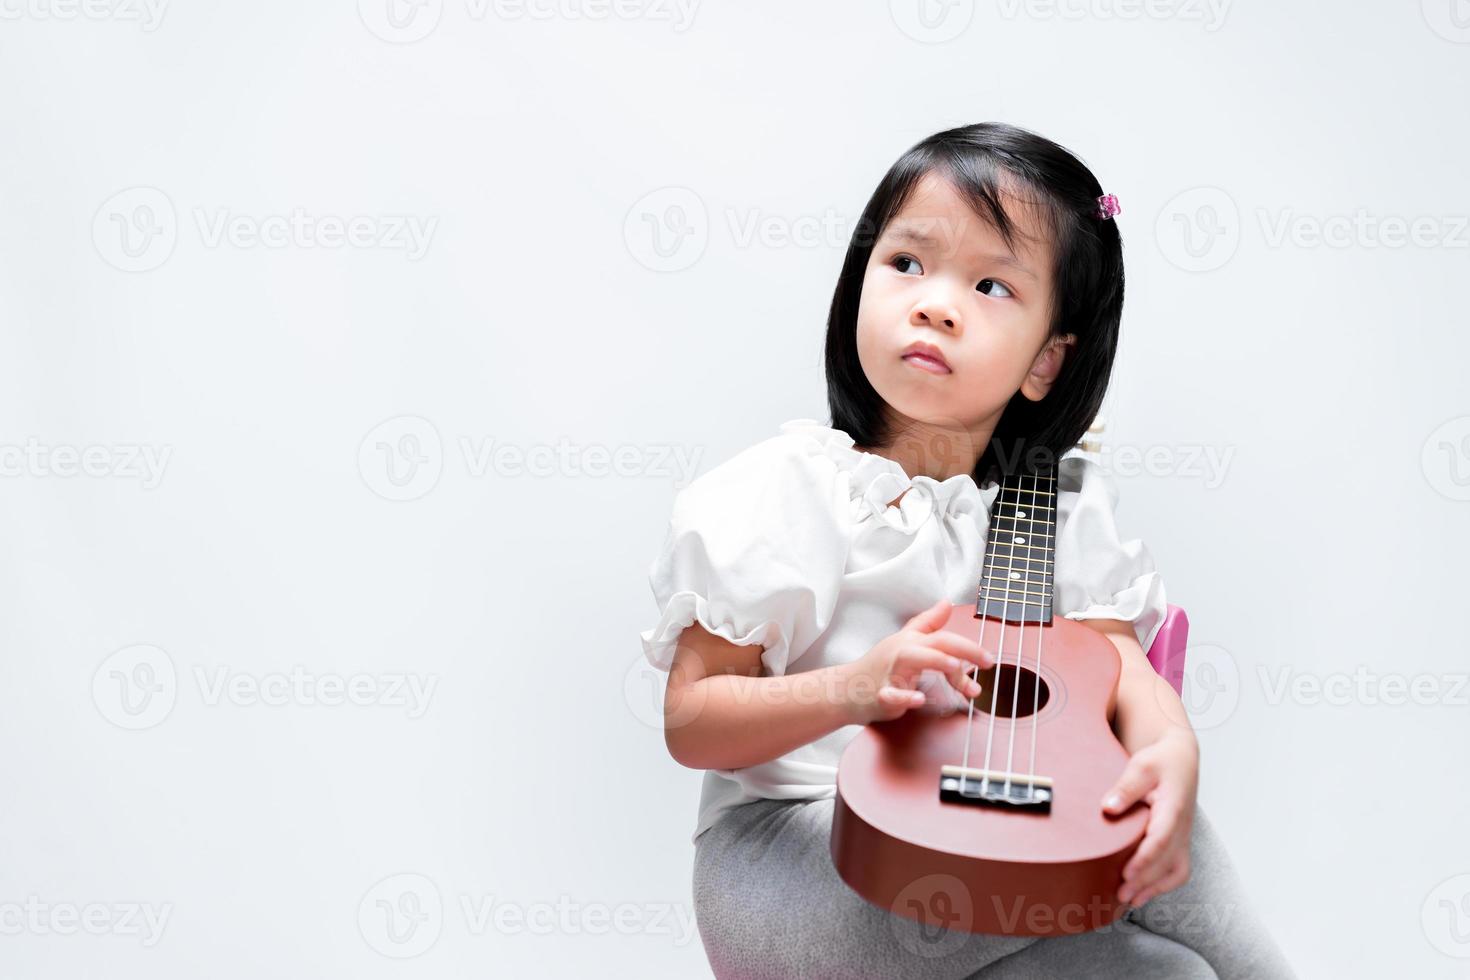 adorable niña pone su ukelele en su hombro. niño toca instrumentos musicales, mirando hacia los lados. sobre fondo blanco de estudio. foto